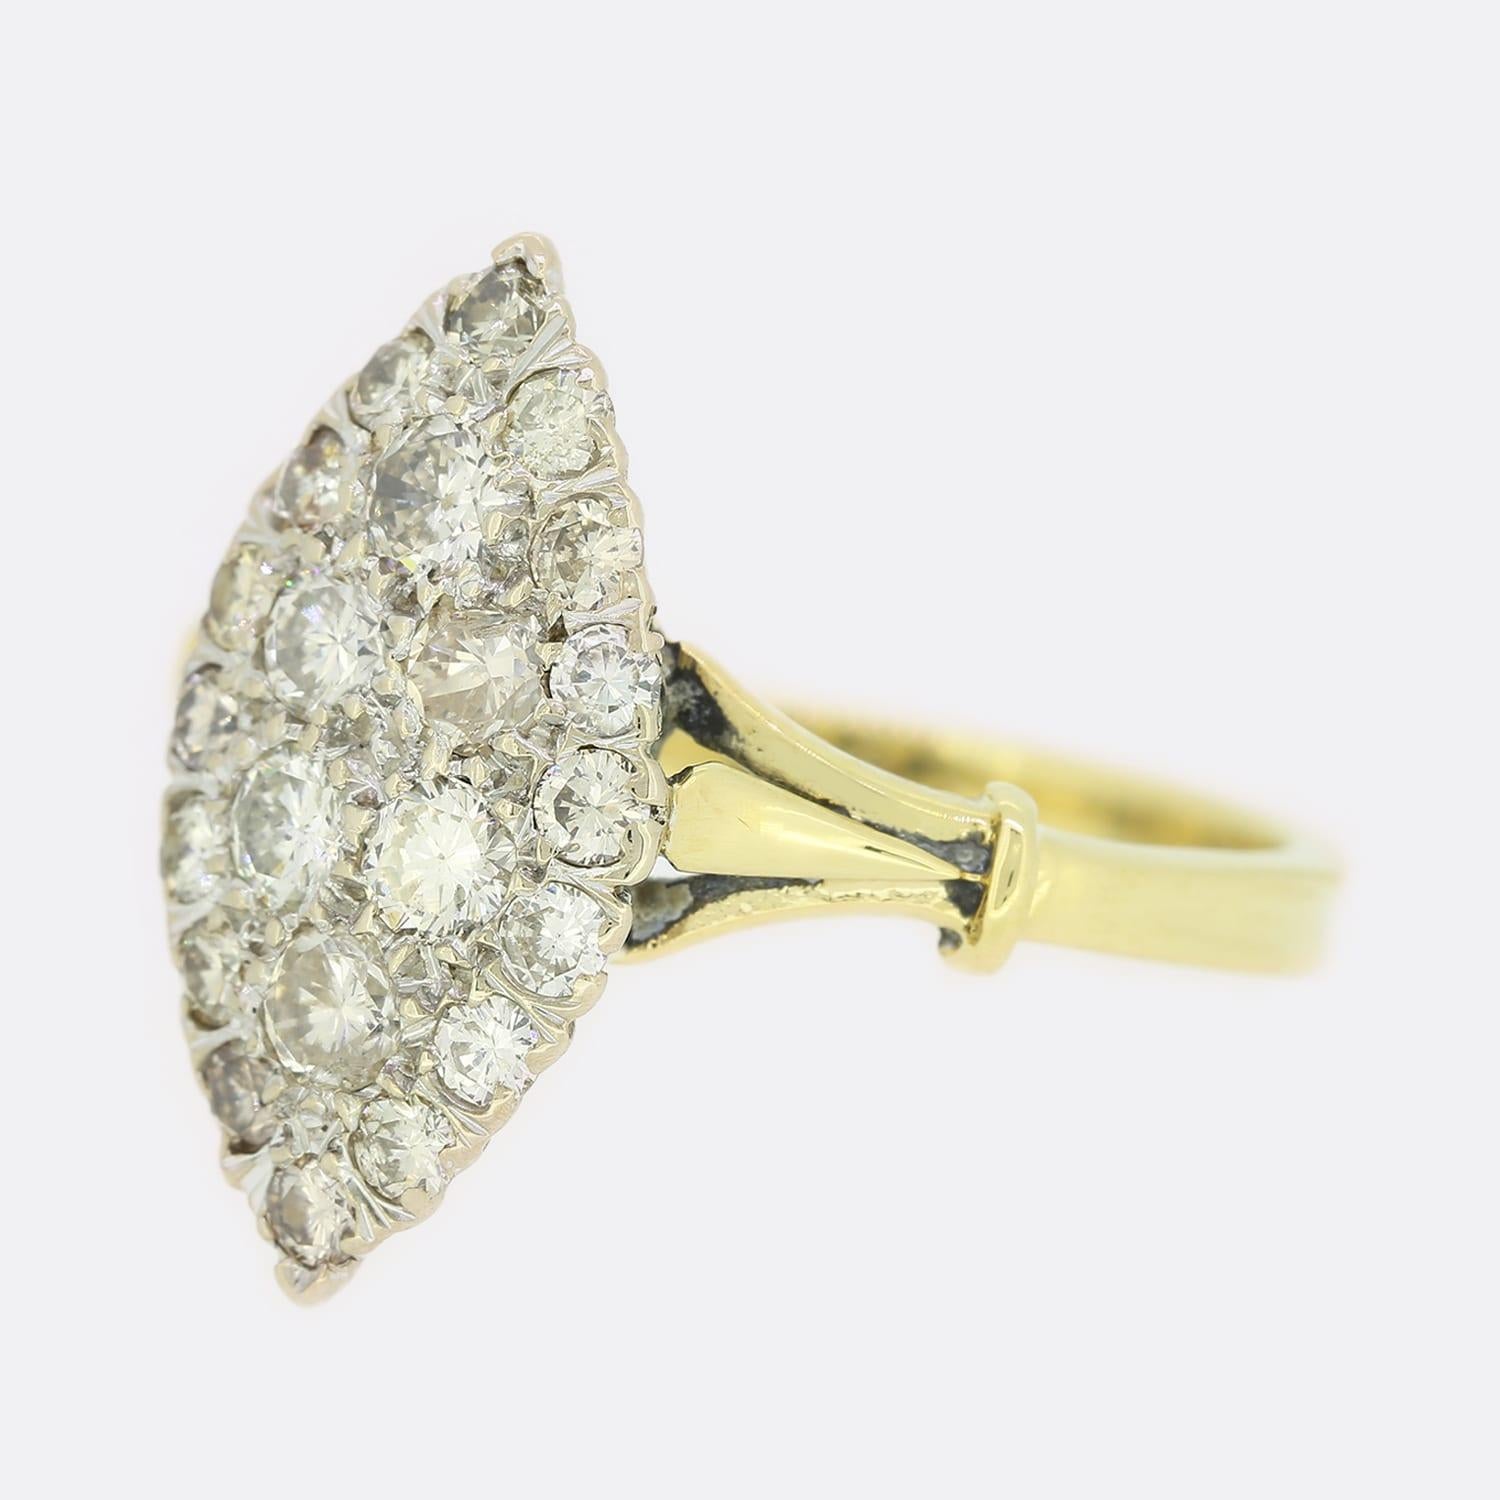 Dies ist ein marquiser Diamantring aus den 1970er Jahren. Der Ring ist mit 22 runden Diamanten im Brillantschliff besetzt und hat hübsche, sich verjüngende Schultern. Die Diamanten sind in Farbe und Reinheit wunderbar aufeinander